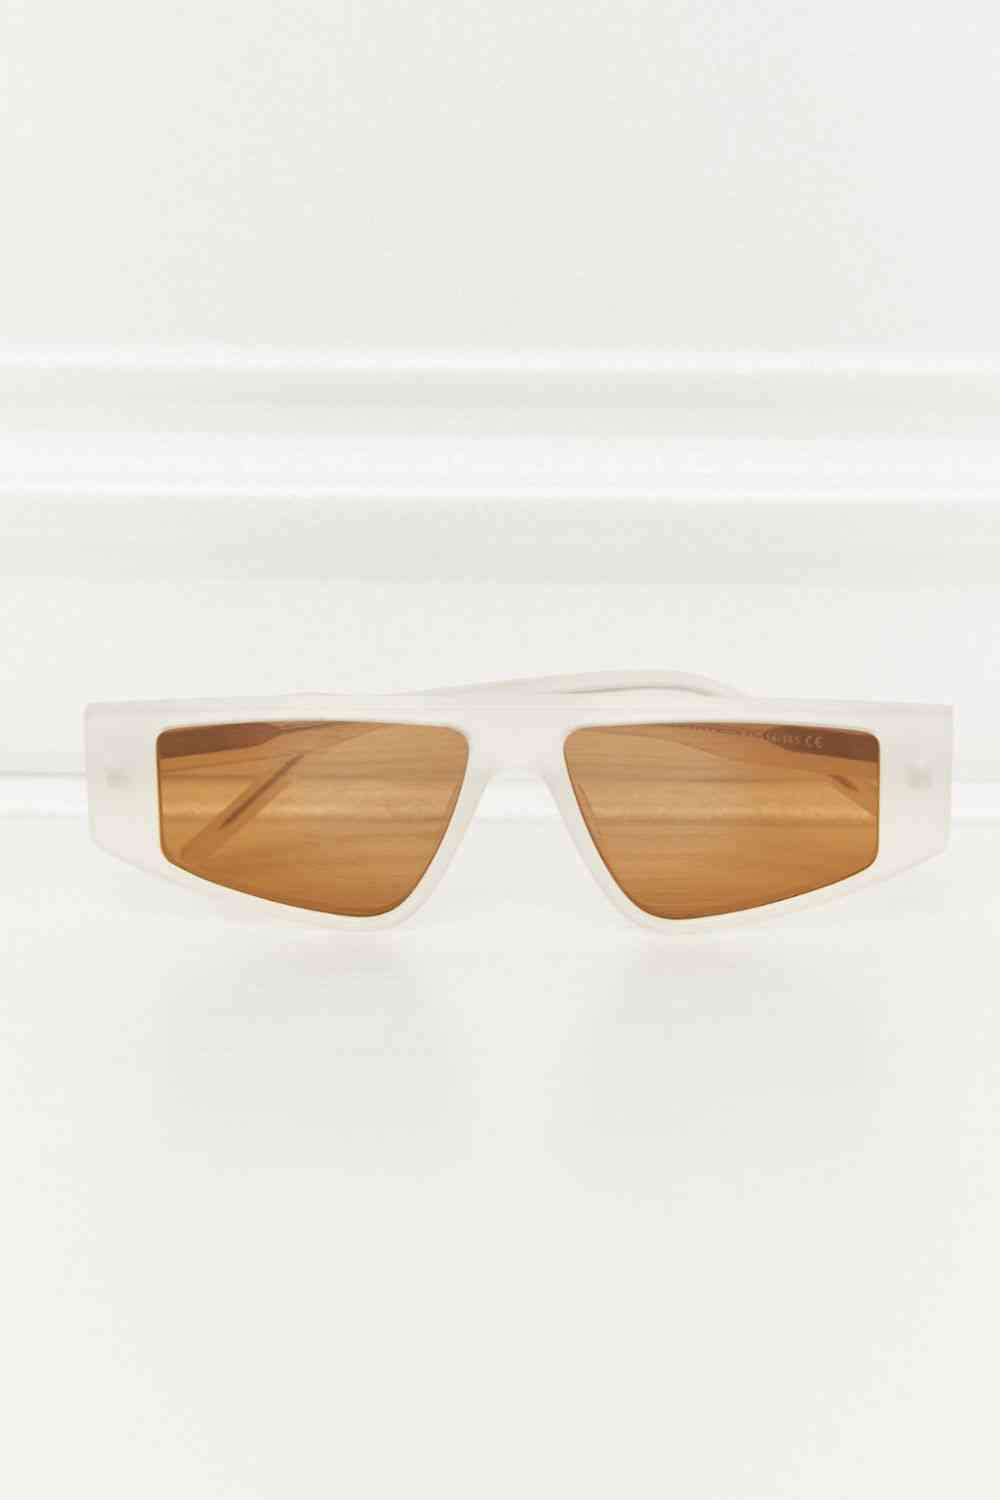 TEEK - Geo TAC Polarized Sunglasses EYEGLASSES TEEK Trend   